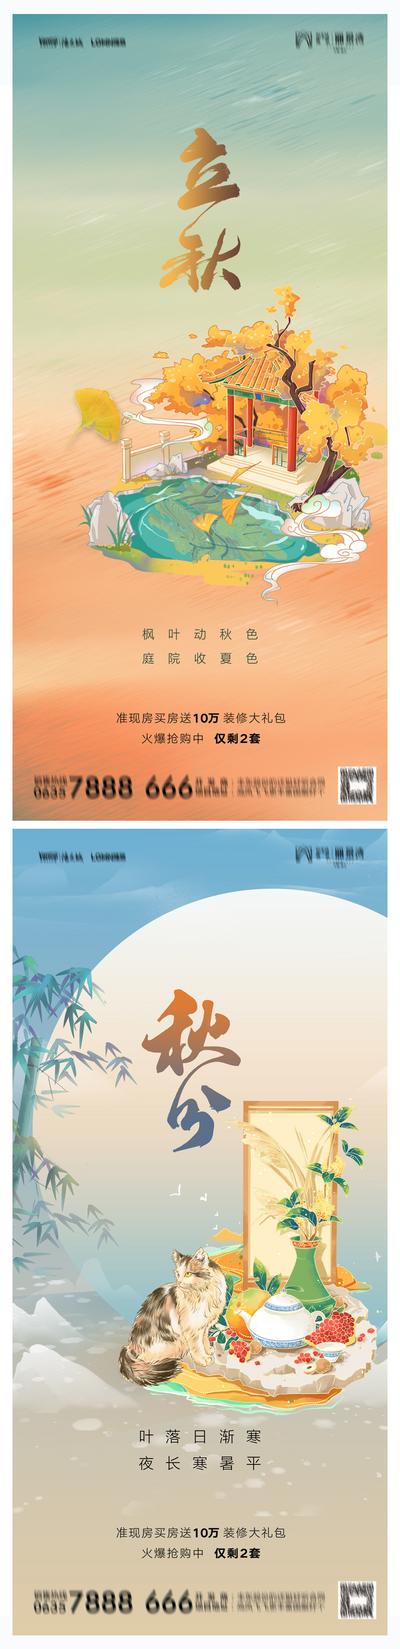 南门网 海报 地产 二十四节气 立秋 秋分 插画 手绘 亭子 猫 竹子